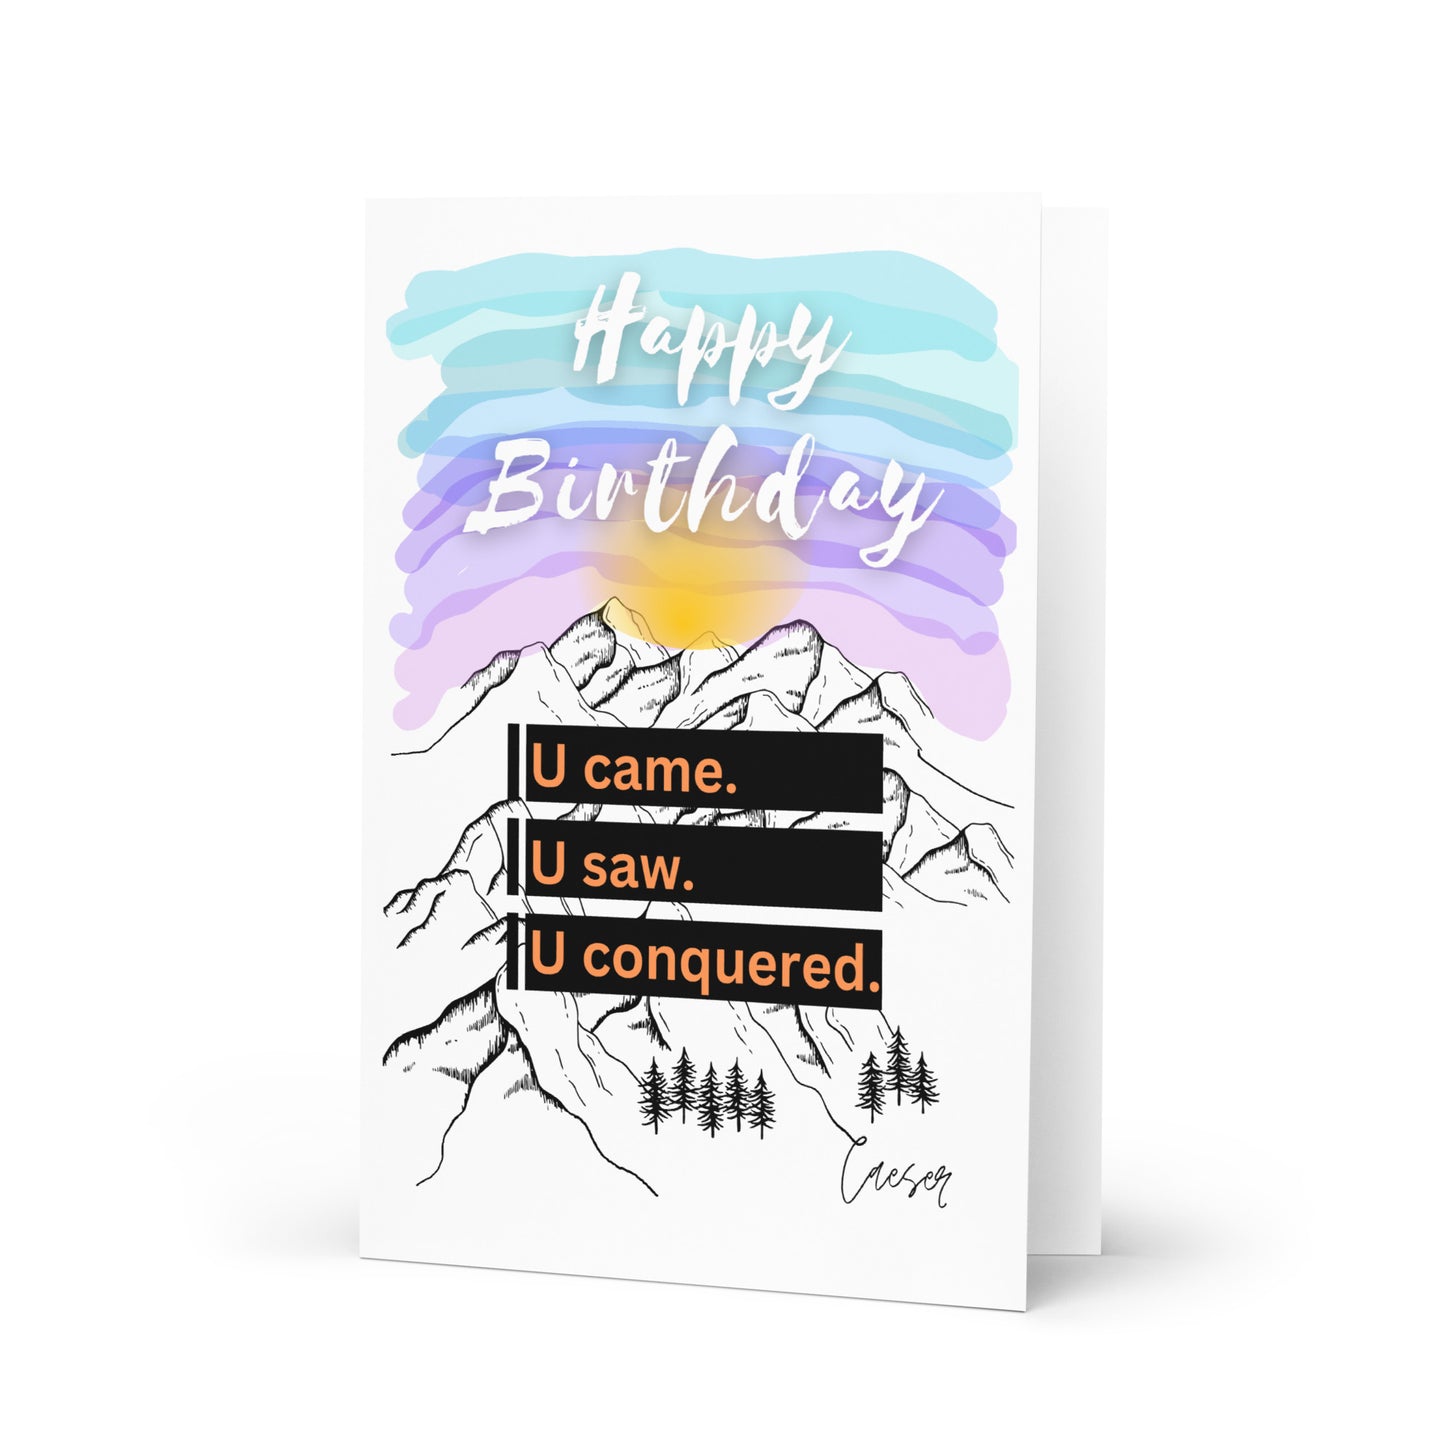 U came. U saw. U conquered. Birthday Card